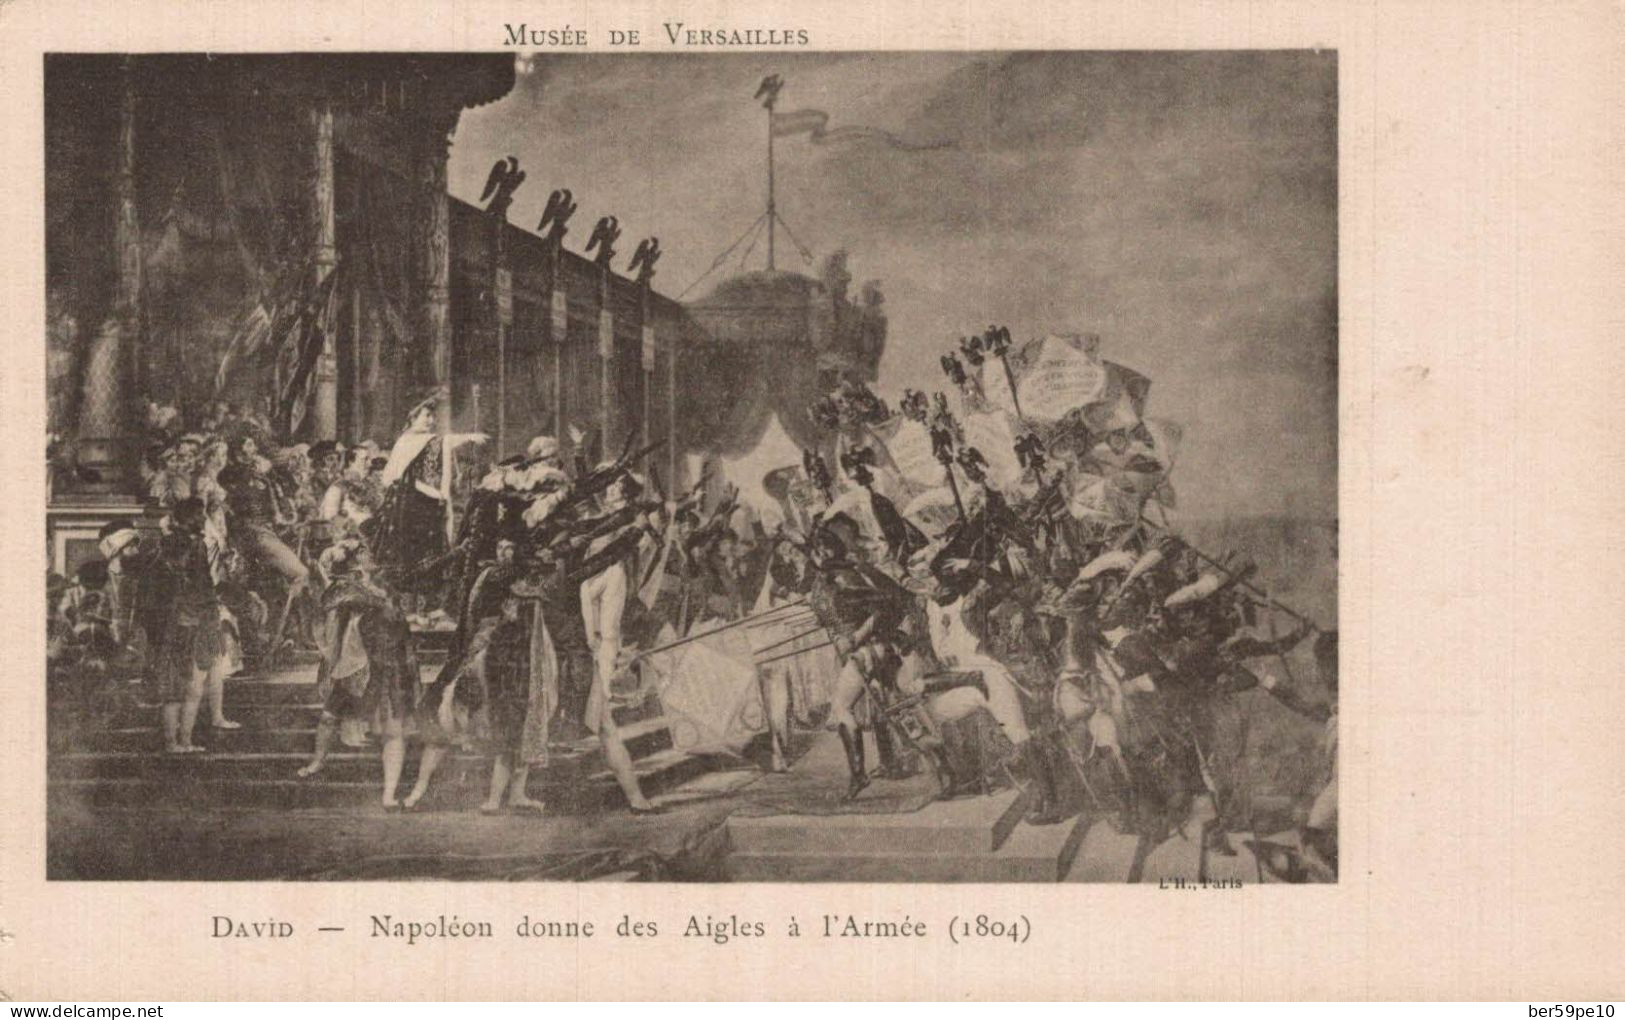 PERSONNAGES HISTORIQUES MUSEE DE VERSAILLES NAPOLEON DONNE DES AIGLES A L'ARMEE 1804 DAVID - Personaggi Storici